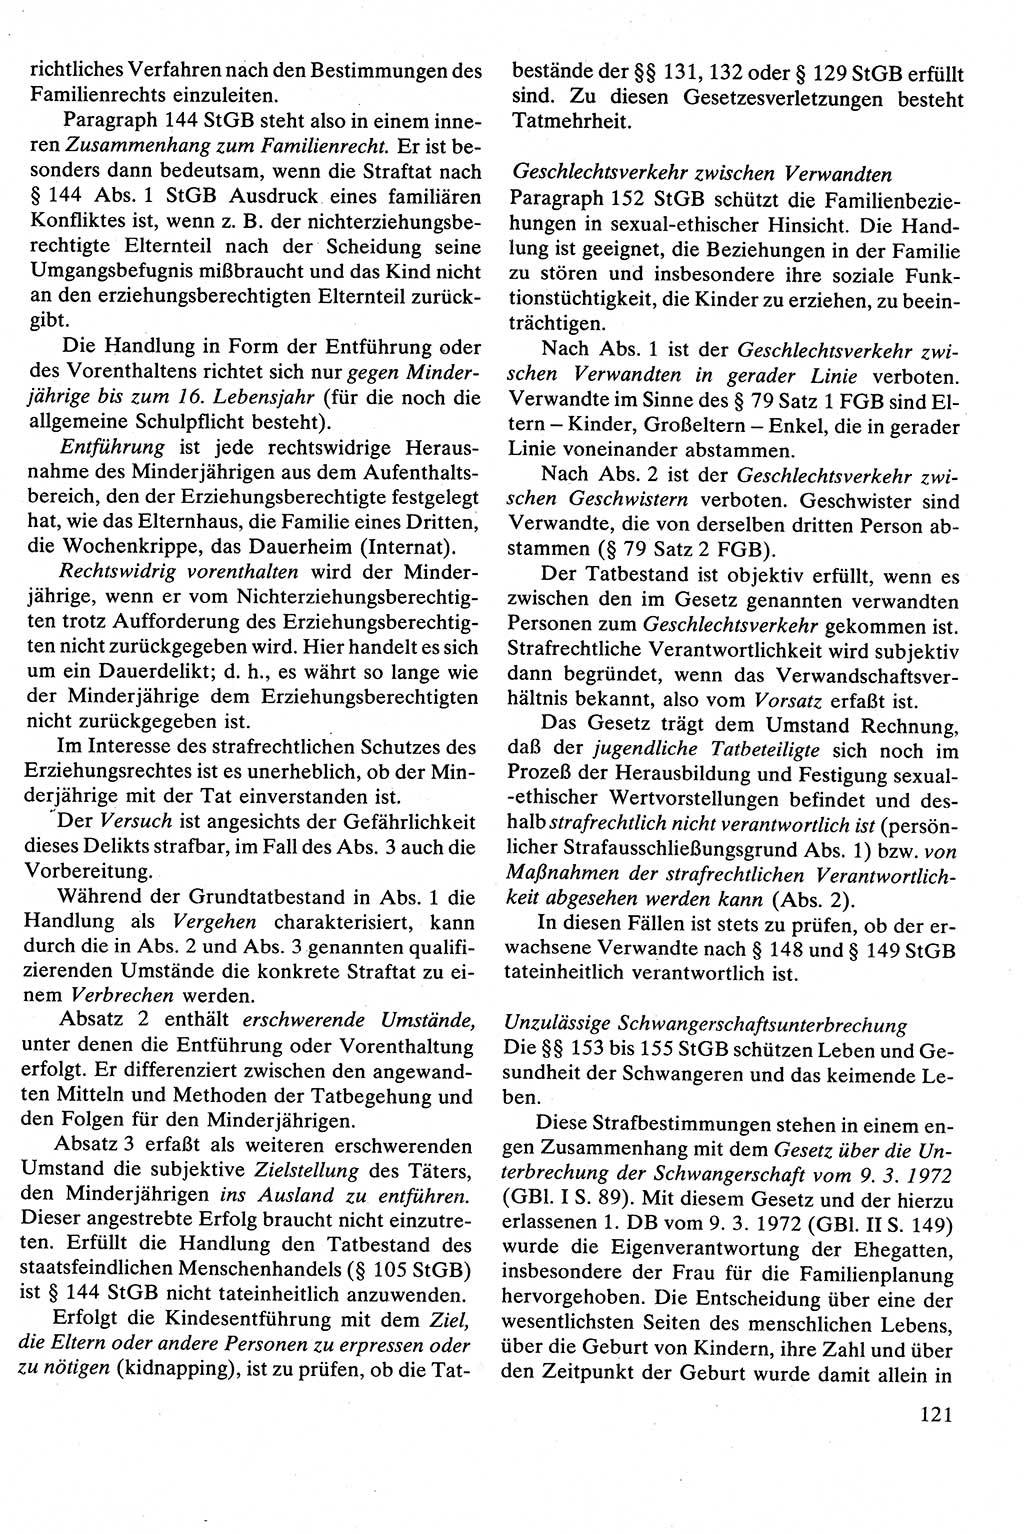 Strafrecht [Deutsche Demokratische Republik (DDR)], Besonderer Teil, Lehrbuch 1981, Seite 121 (Strafr. DDR BT Lb. 1981, S. 121)